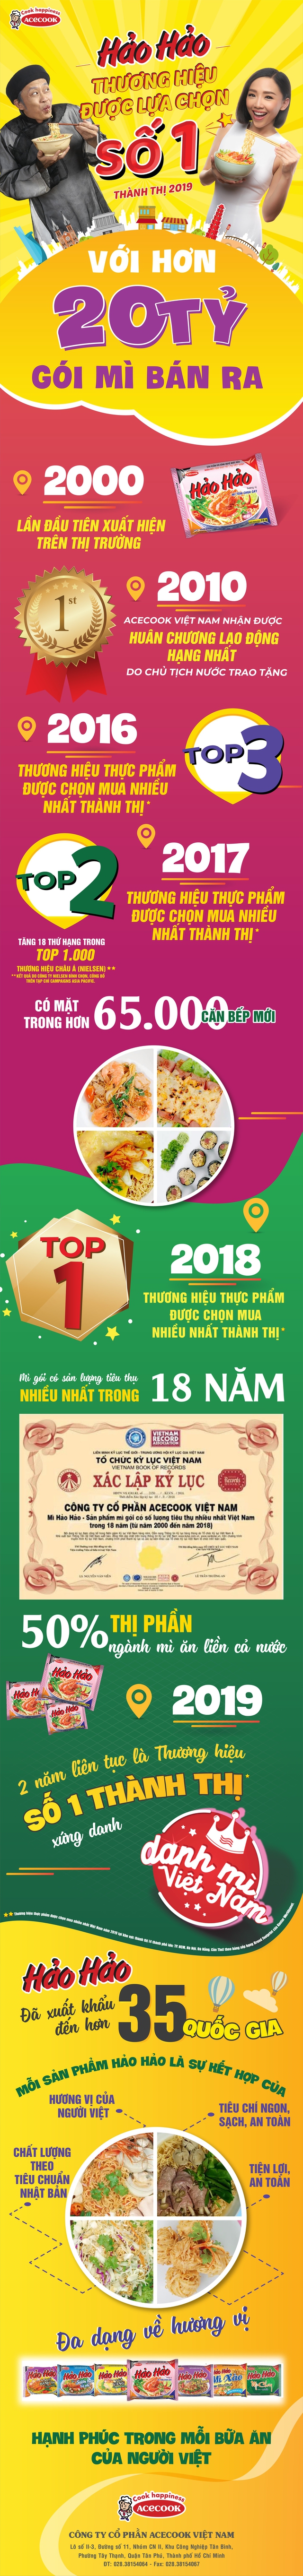 Hảo Hảo được Kantar công nhận là Mì ăn liền số 1 tại khu vực thành thị 2019 - Ảnh 1.